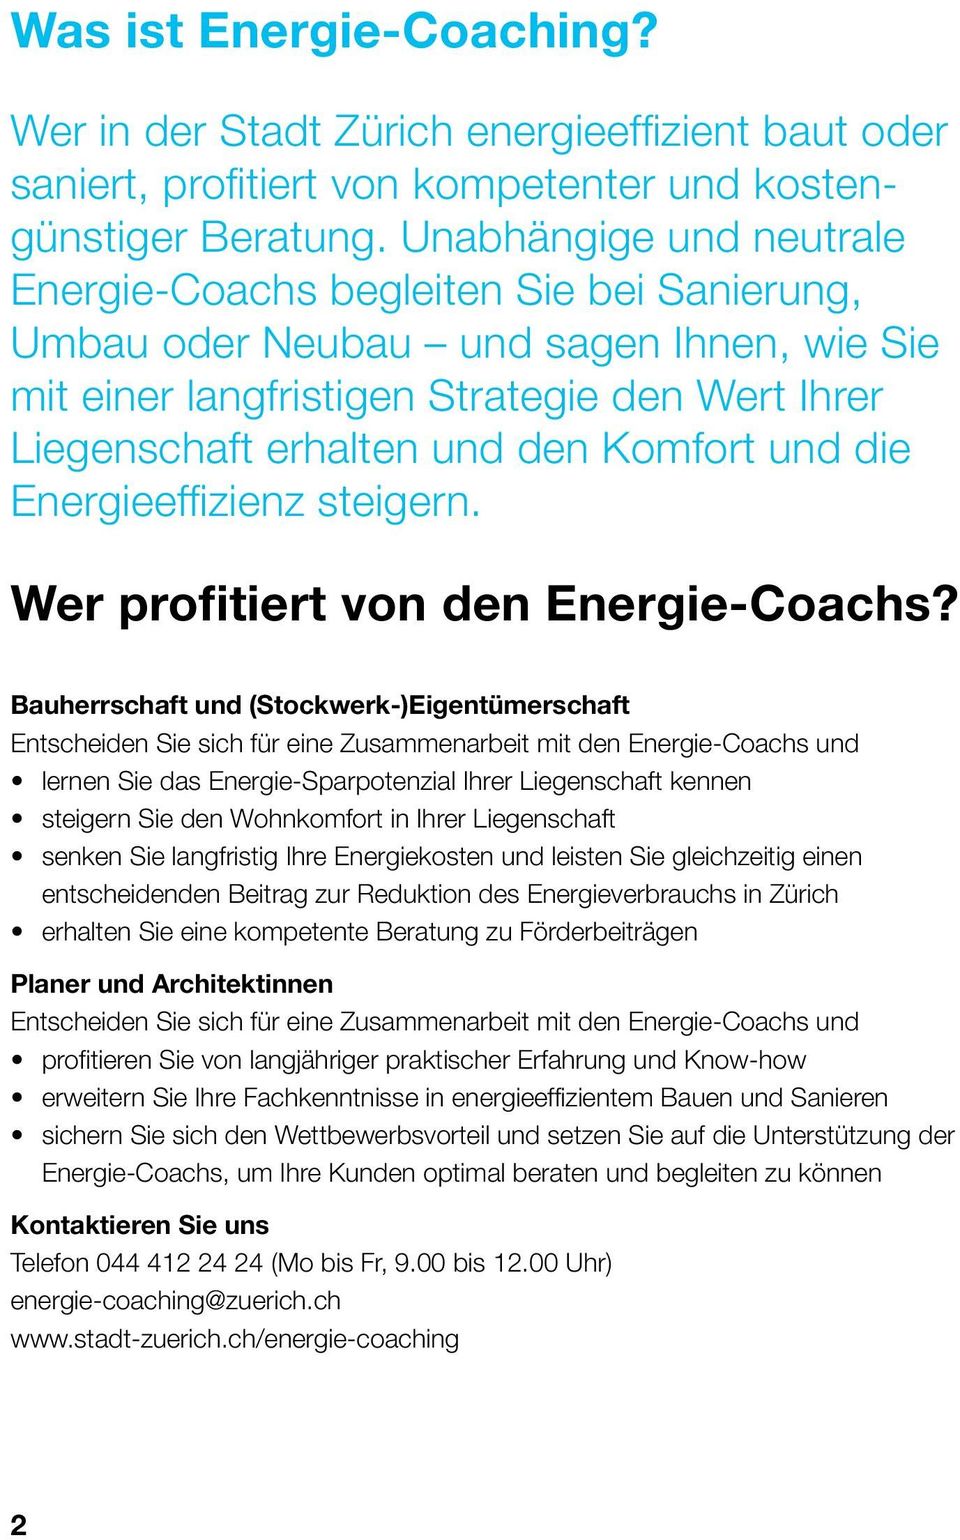 und die Energieeffizienz steigern. Wer profitiert von den Energie-Coachs?